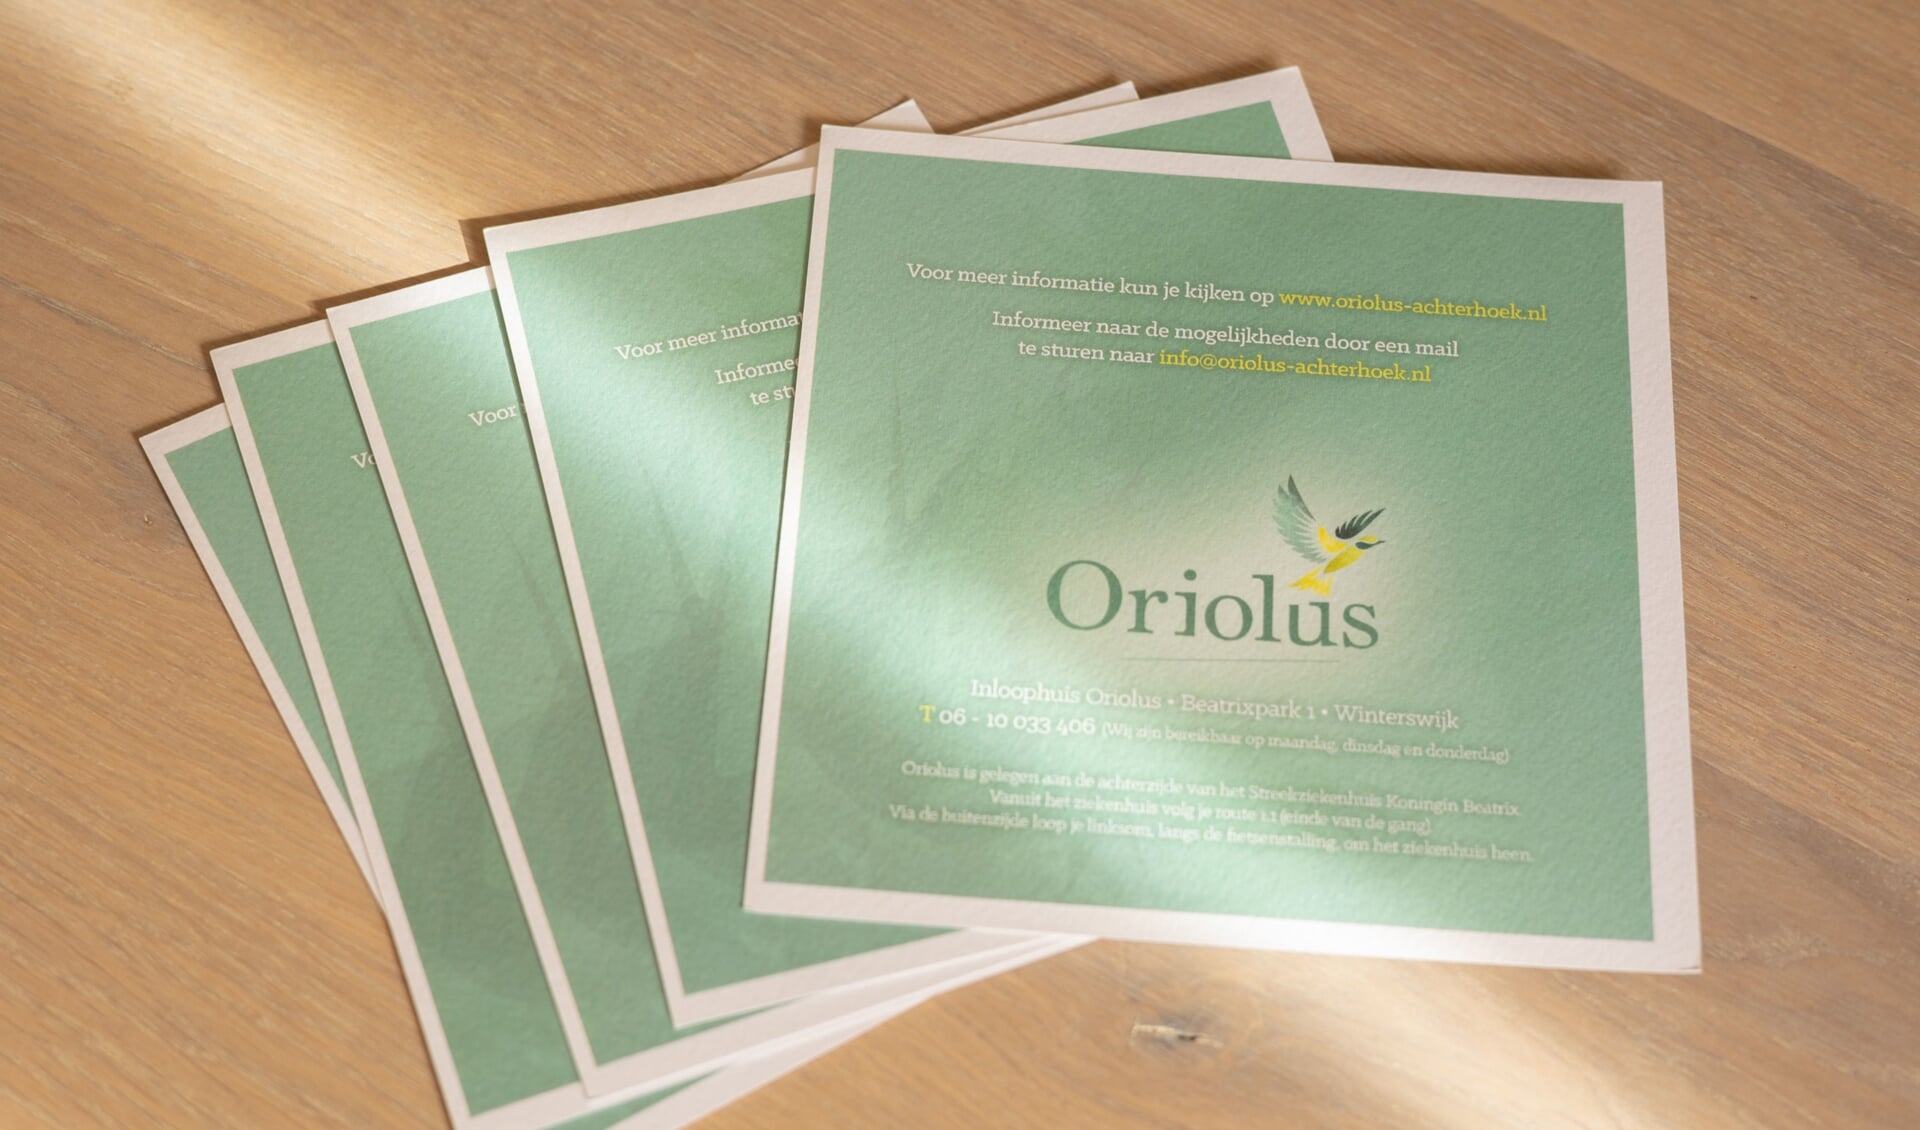 Oriolus houdt een informatiebijeenkomst over hoe zaken praktisch te regelen. Foto: Nicky Heinne - Fotografie